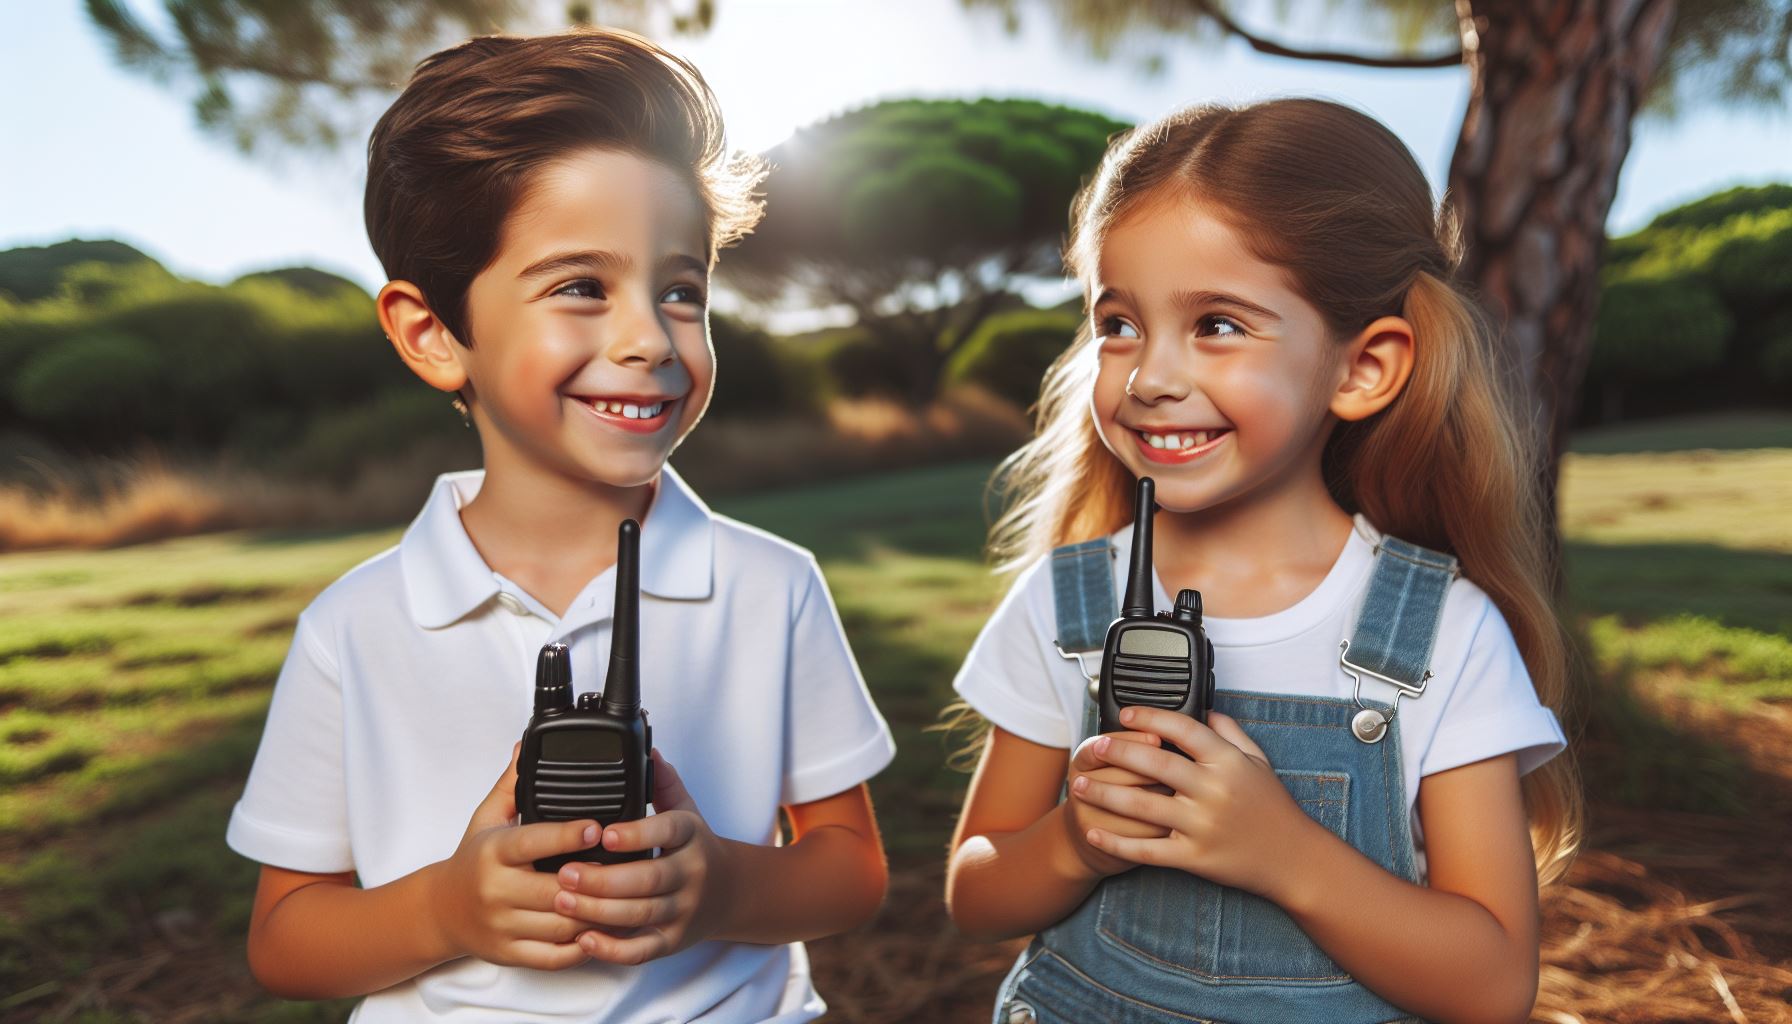 Two children outside holding walkie talkies